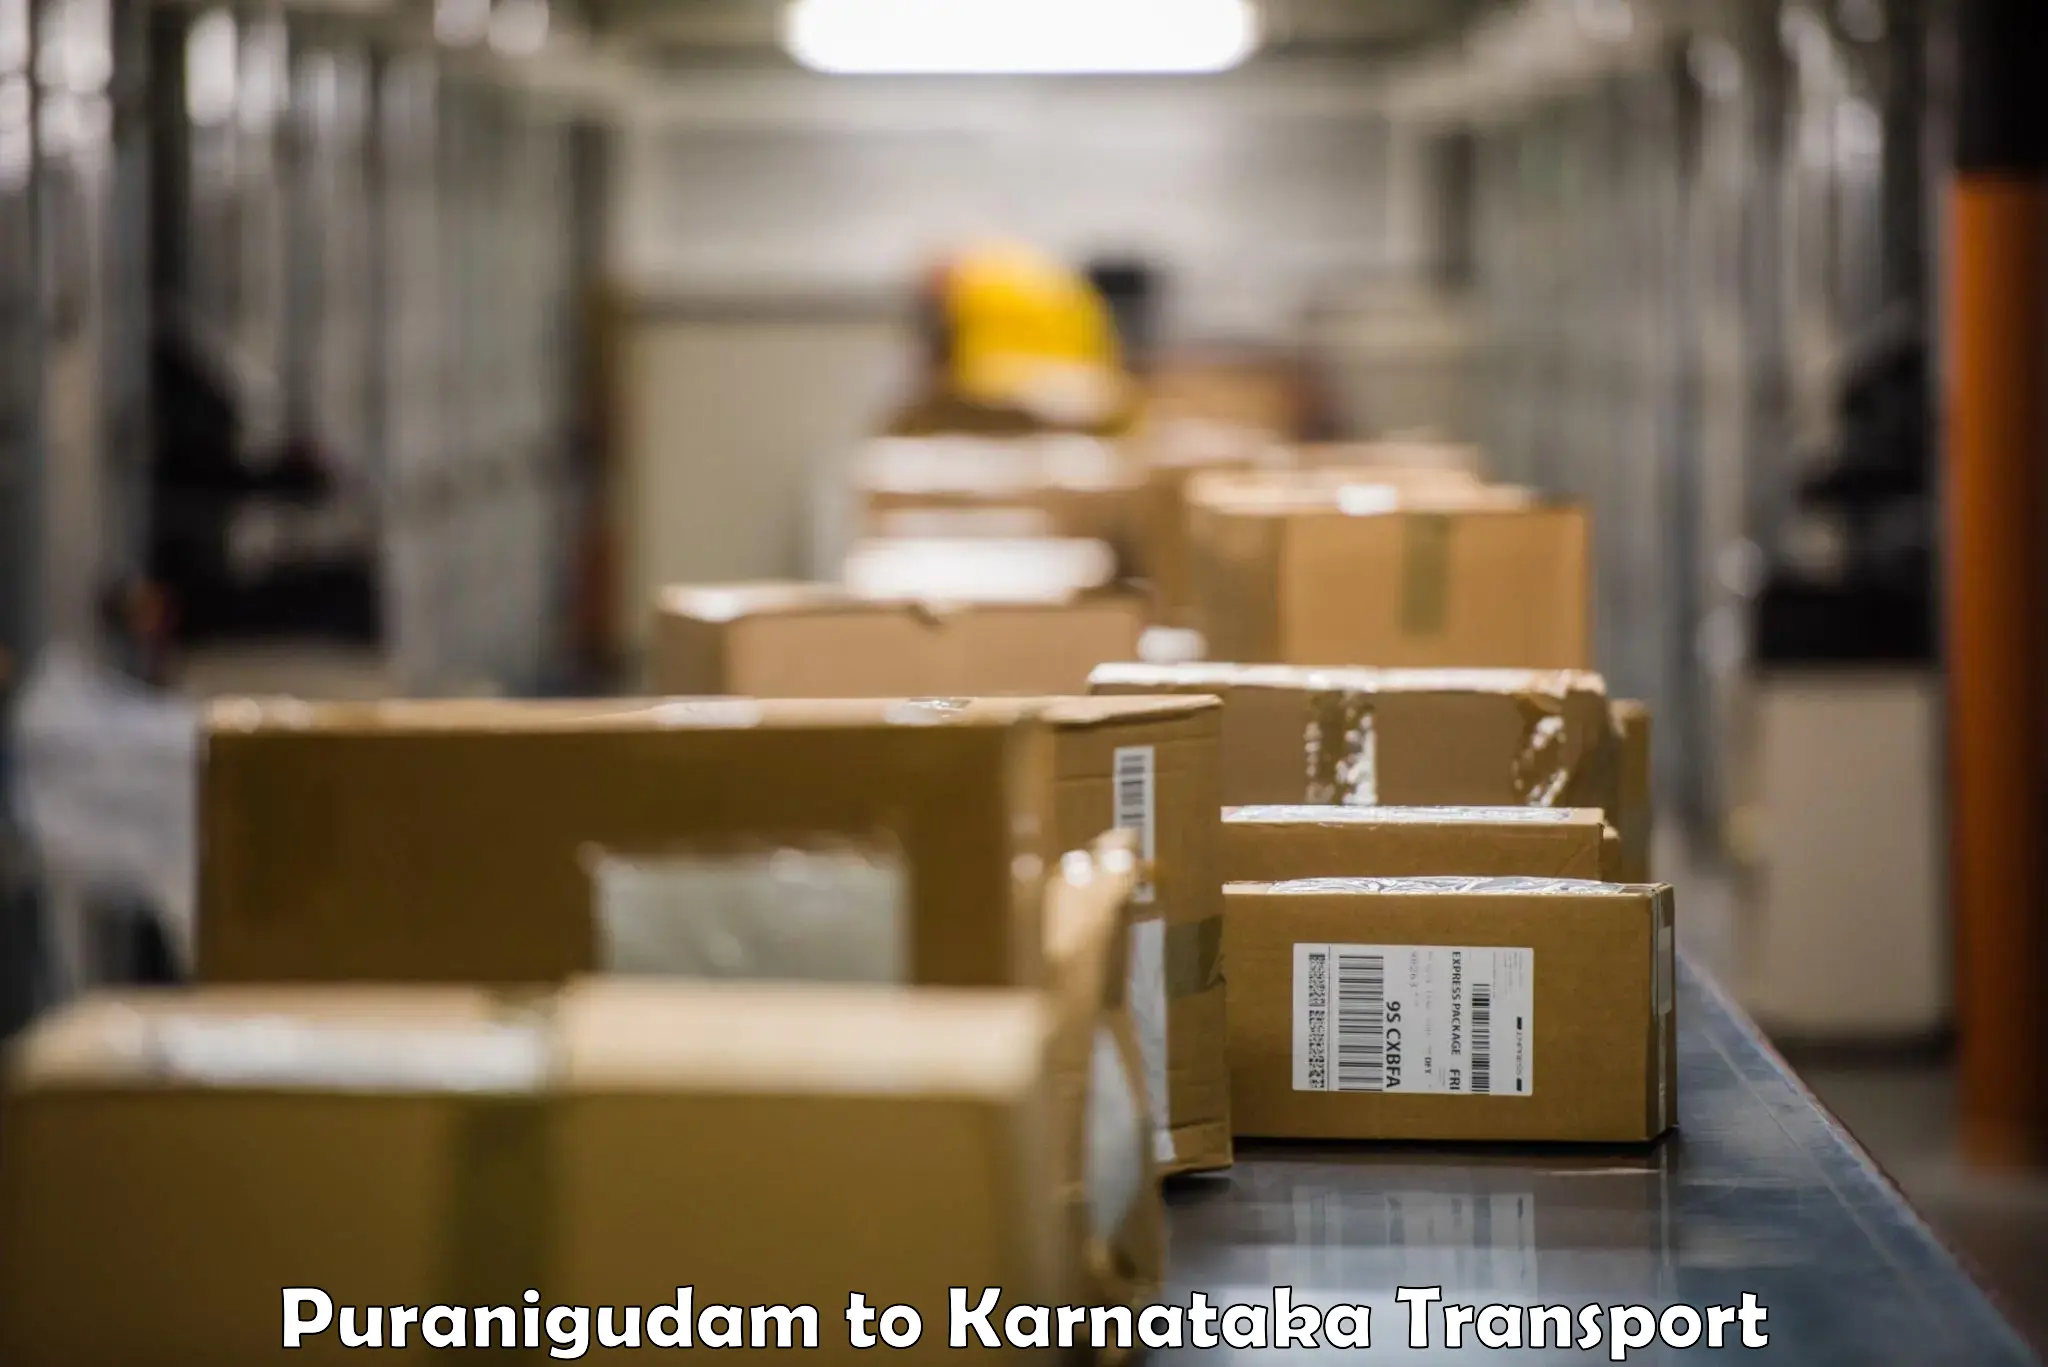 Truck transport companies in India in Puranigudam to Karnataka